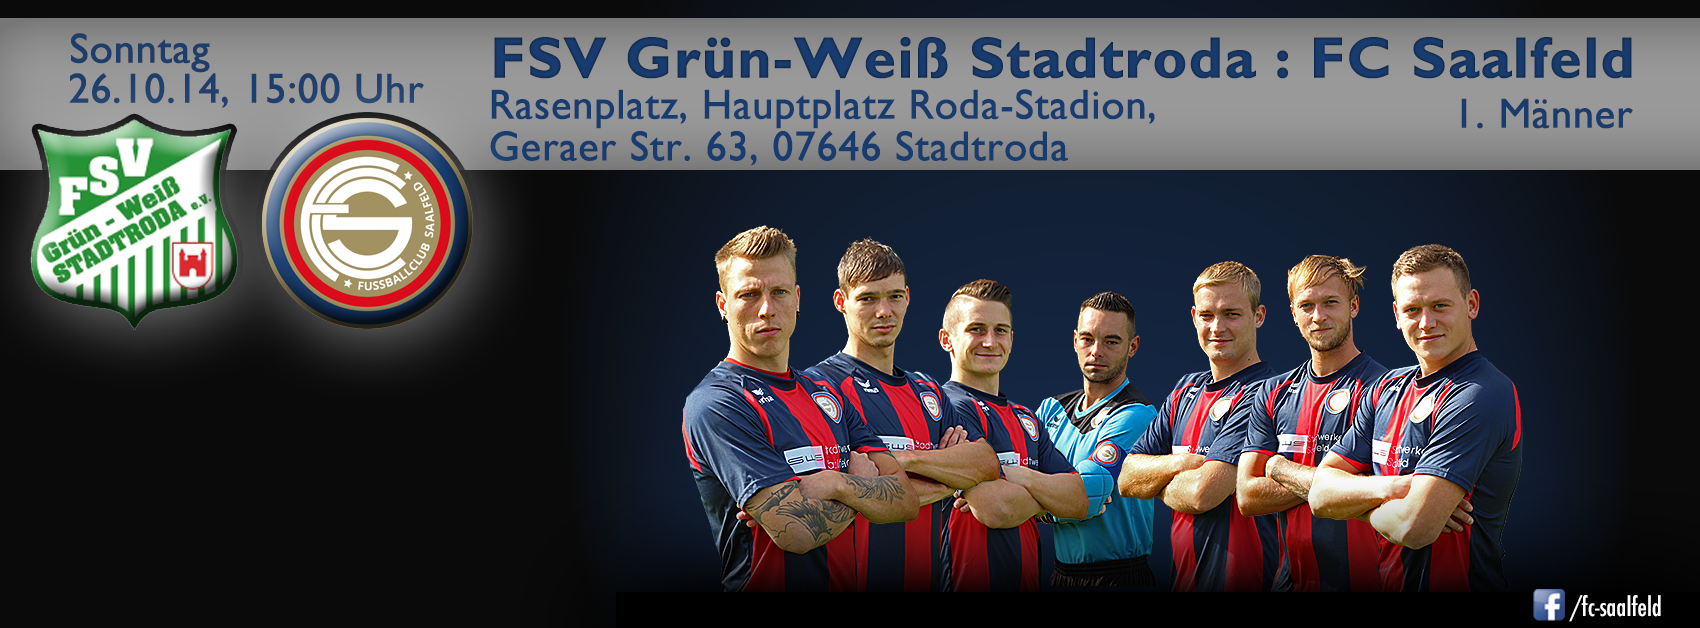 Mit dem Fanbus zum Auswärtsspiel FSV Grün-Weiß Stadtroda gegen FC Saalfeld